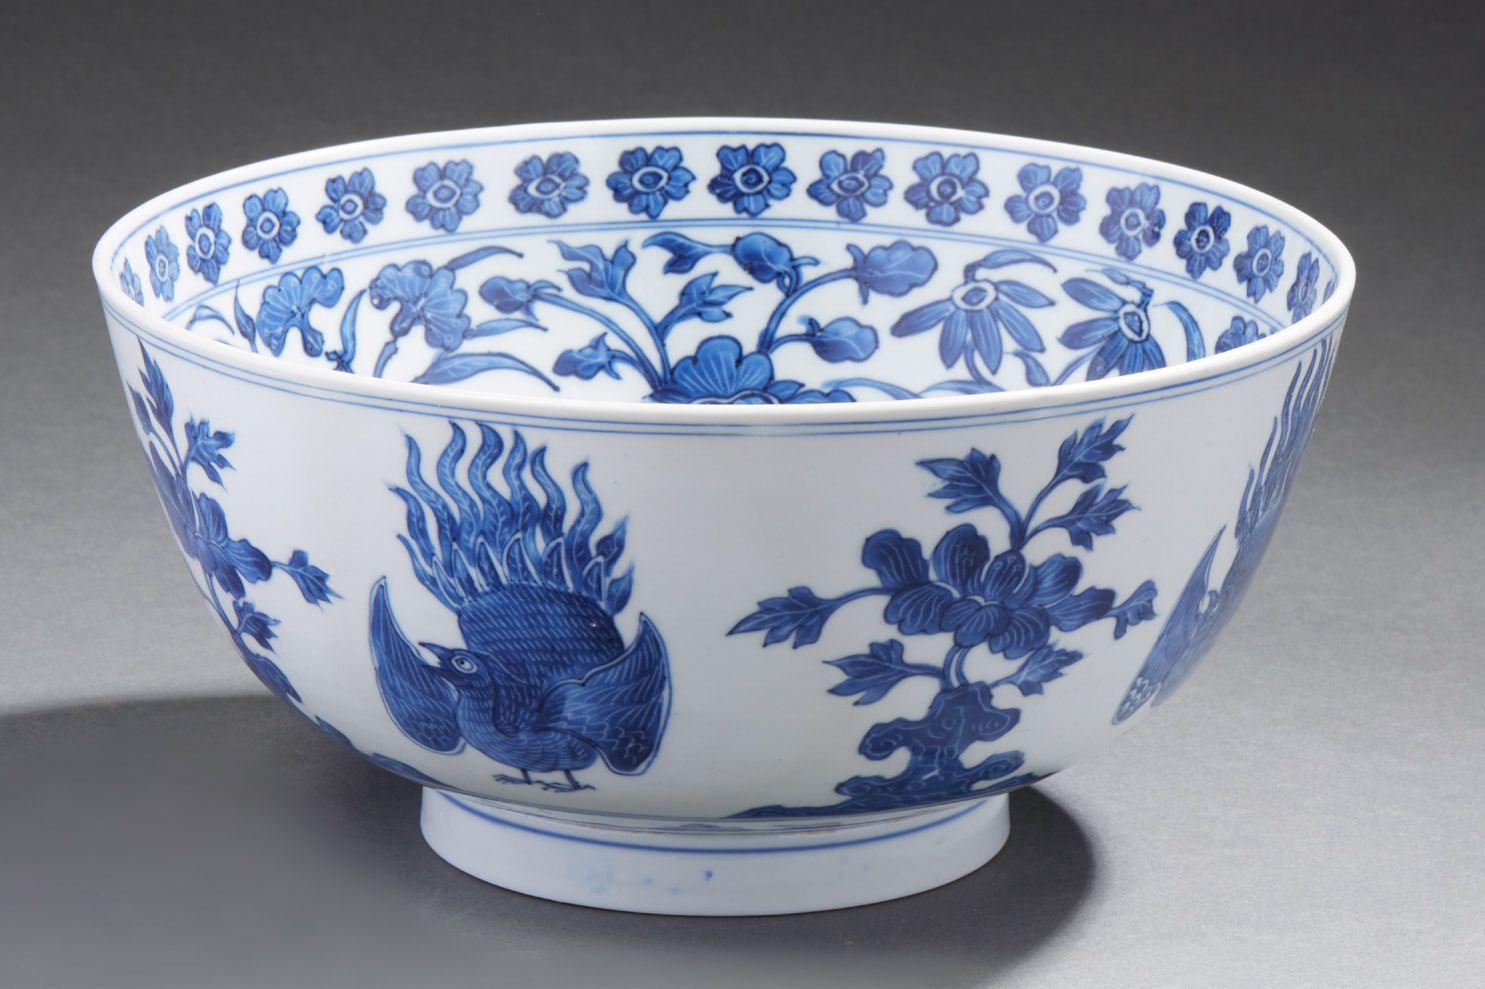 CHINE Gran cuenco de porcelana decorado en azul bajo vidriado con pájaros, flore&hellip;